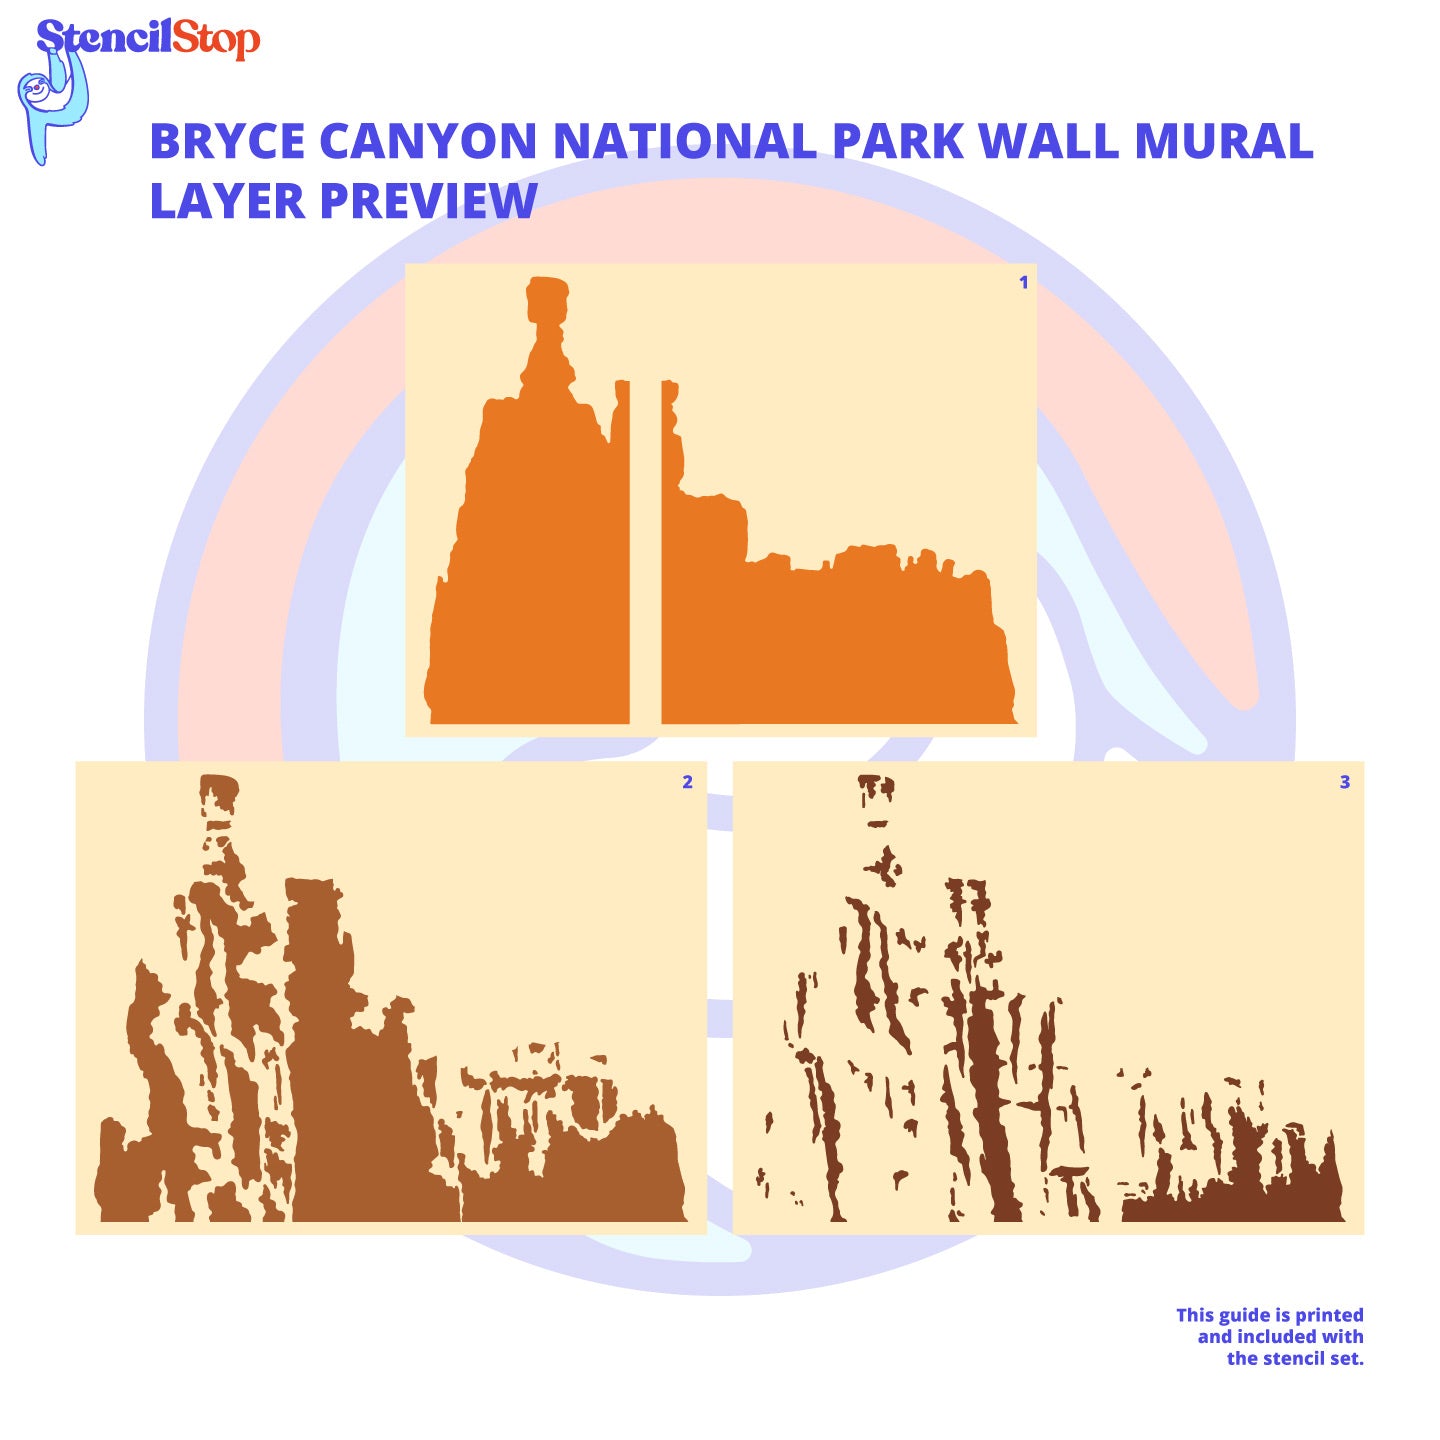 Conjunto de plantillas para mural de pared del Parque Nacional Bryce Canyon